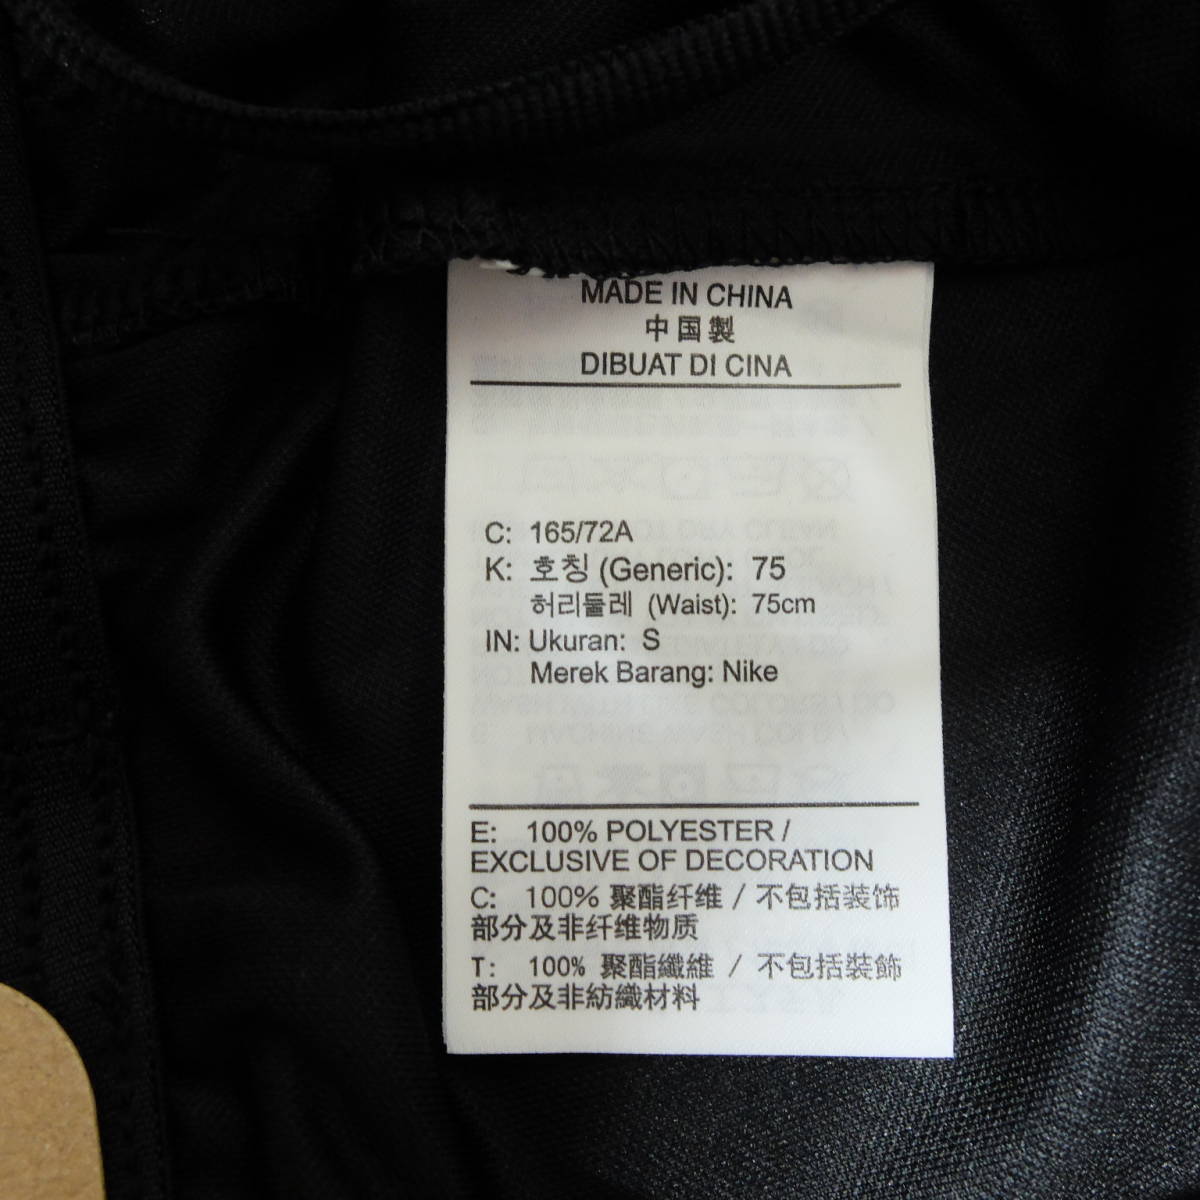 [新品 送料込] メンズS ナイキ Dri-FIT メンズ ニット トレーニングショートパンツ Nike Dri-FIT Men's Knit Training Shorts DD1888 010